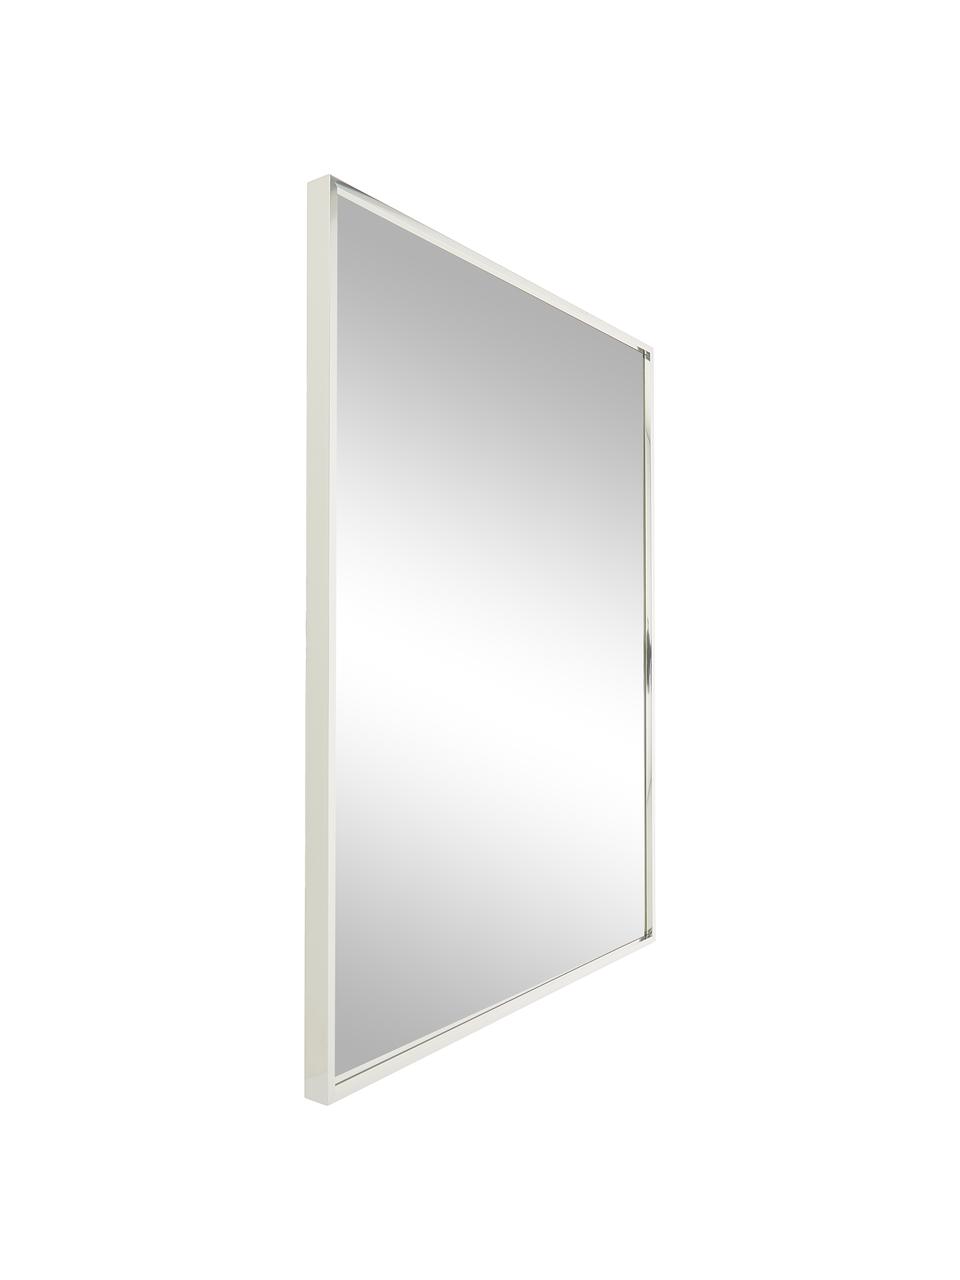 Eckiger Wandspiegel Alpha mit silbernem Aluminiumrahmen, Rahmen: Aluminium, Spiegelfläche: Spiegelglas, Aluminium, 50 x 70 cm